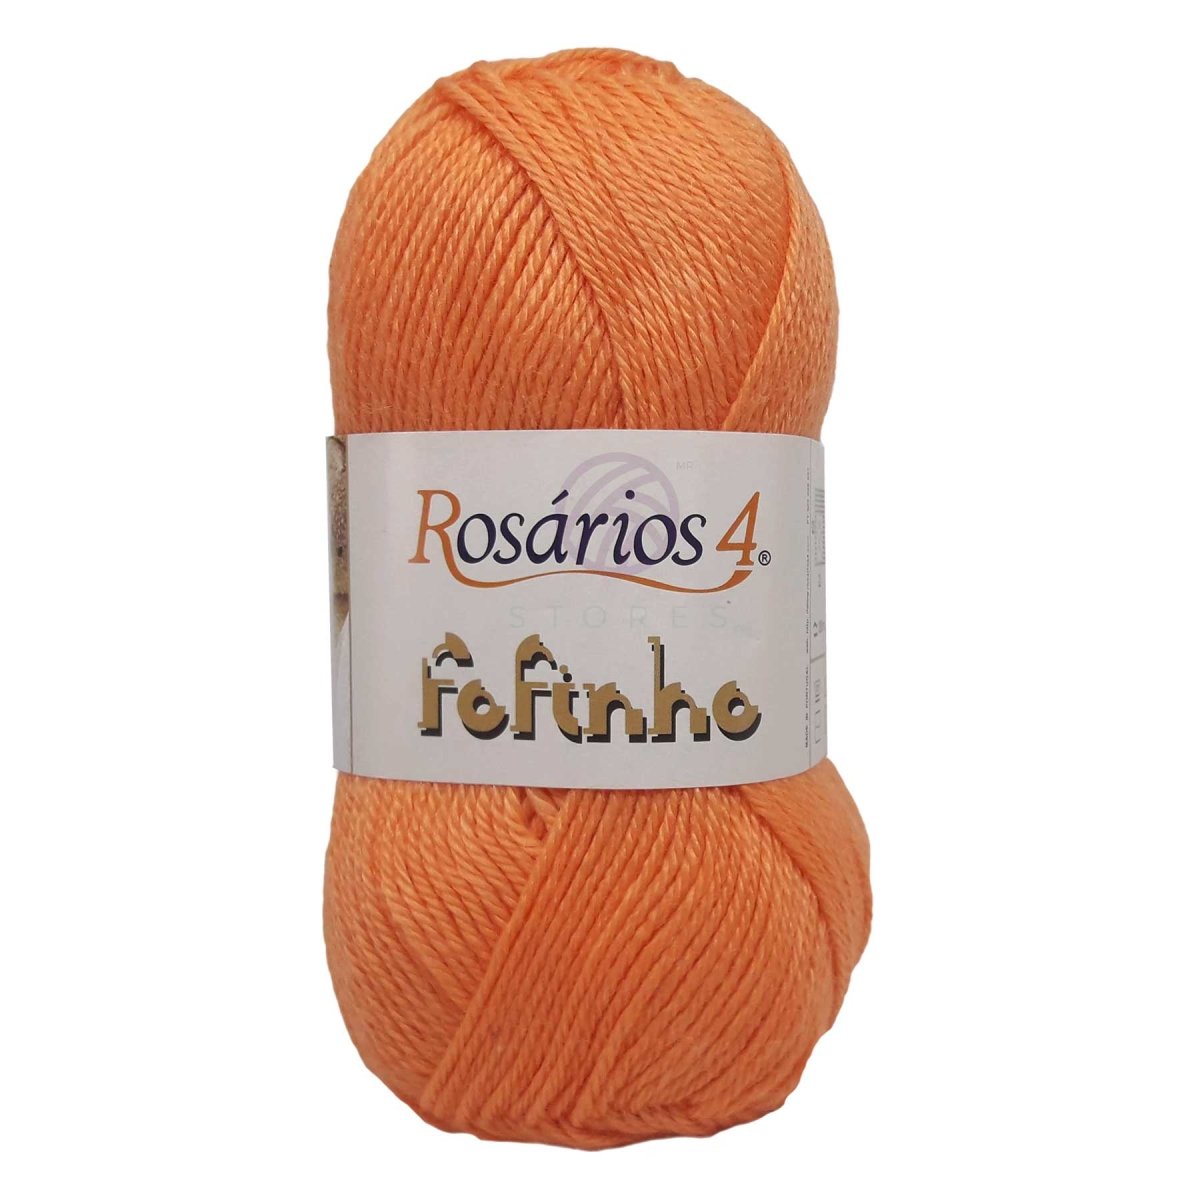 FOFINHO - Crochetstores441-115606850441113